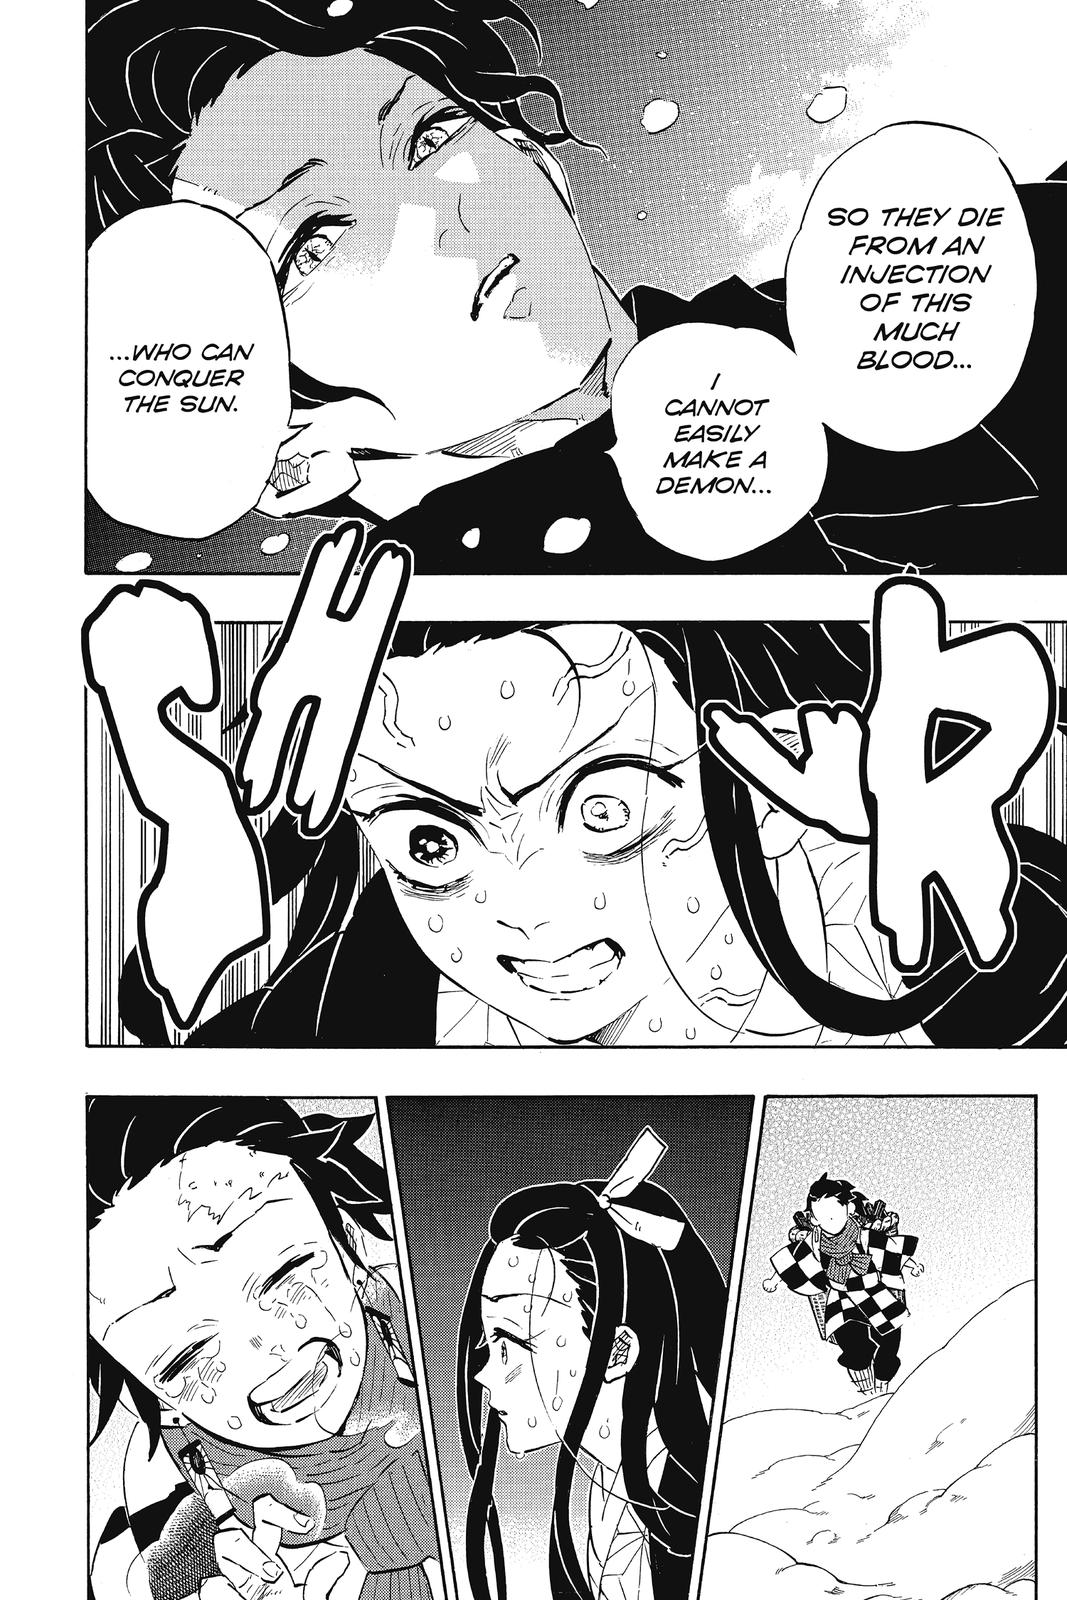 Demon Slayer Manga Manga Chapter - 196 - image 1